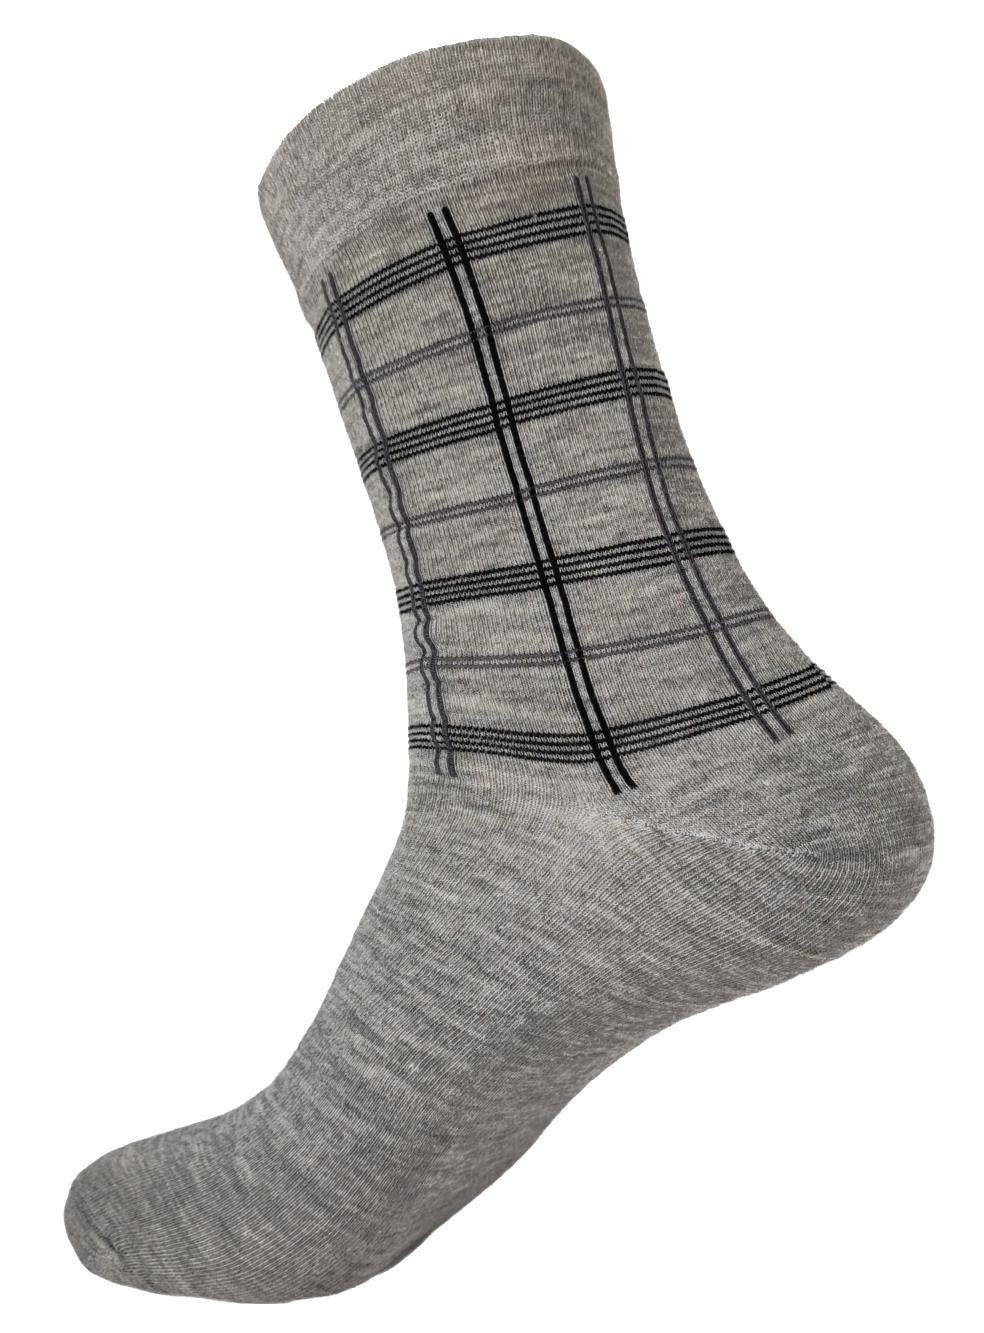 12 EloModa (12-Paar) Basicsocken Paar Socken klassischer Form Mix4 Sport Freizeit Paar, Muster Herren 12